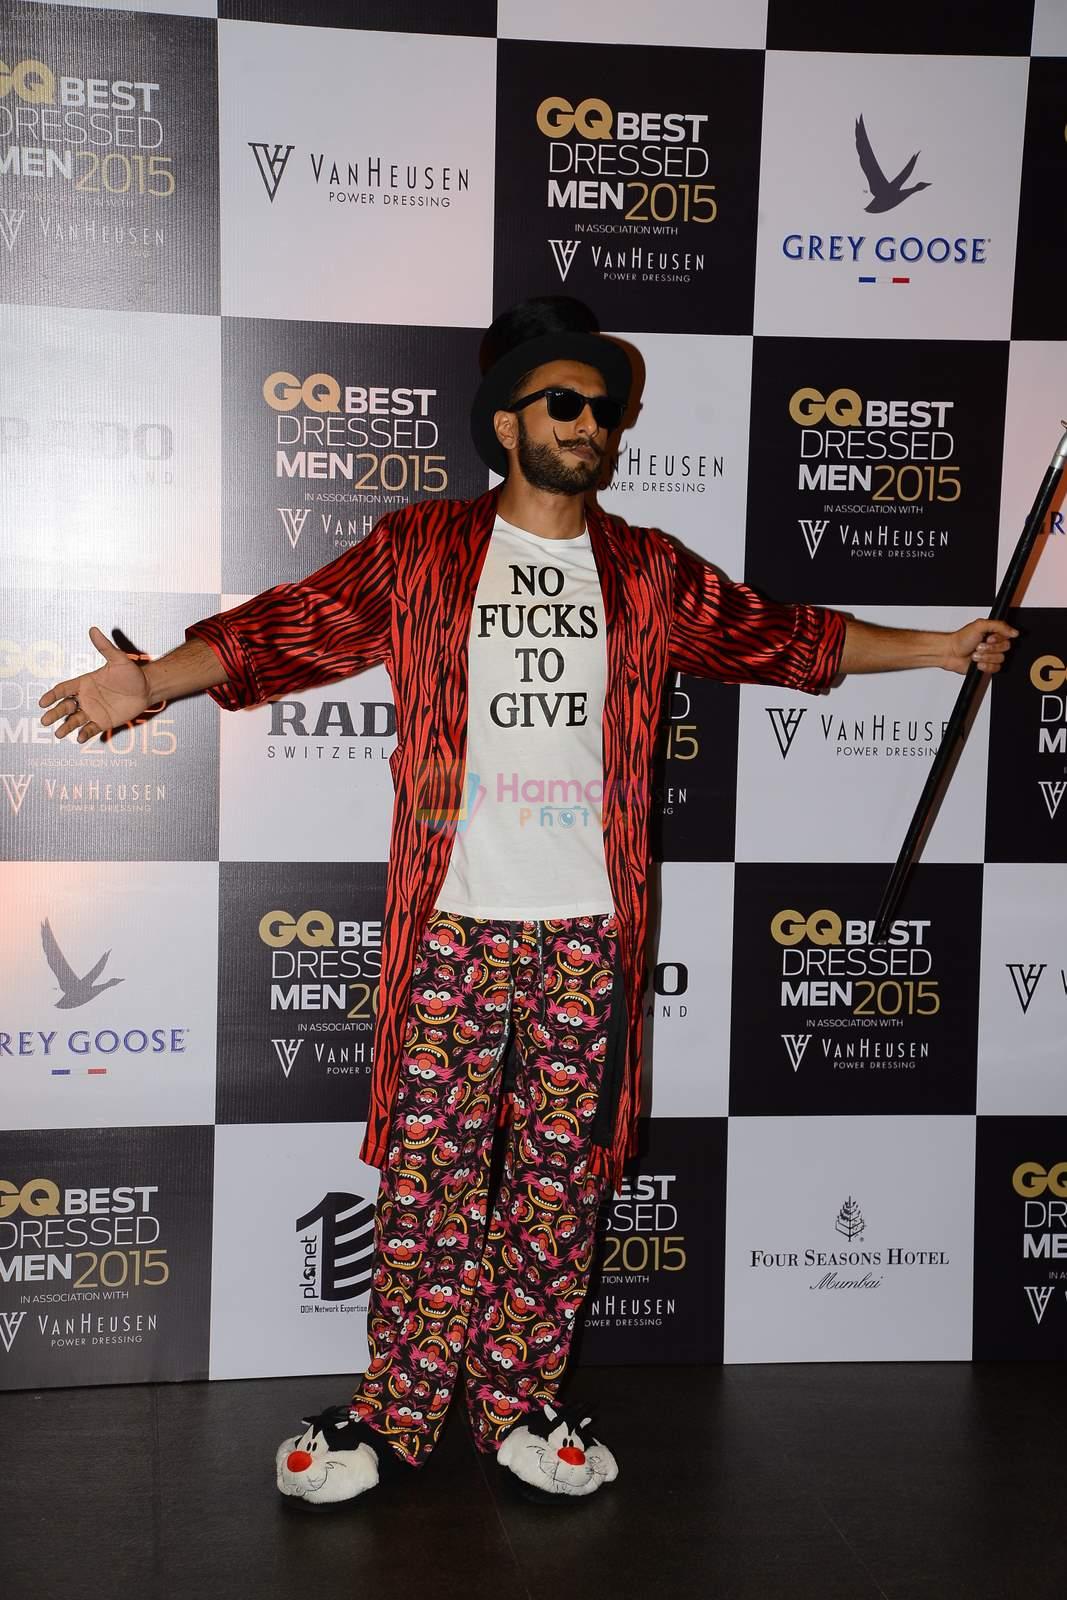 Ranveer Singh at GQ Best-Dressed Men in India 2015 in Mumbai on 12th June 2015